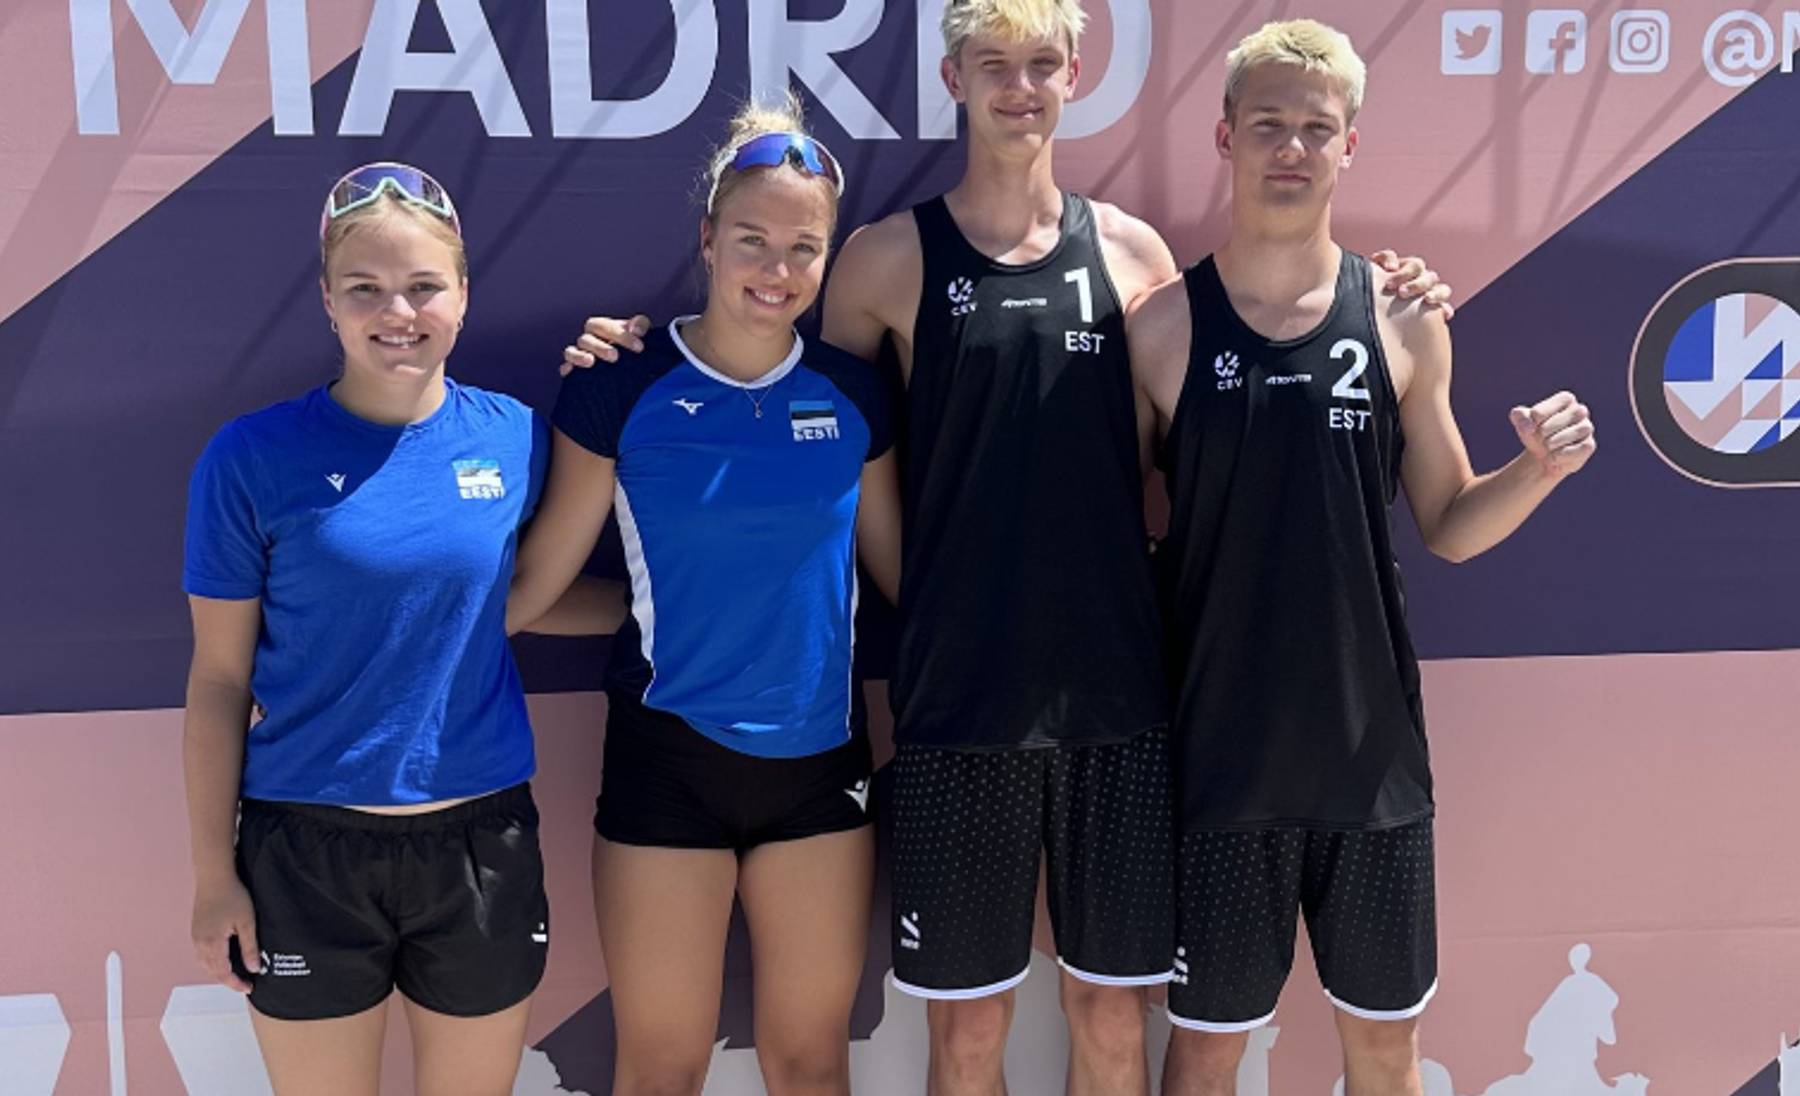 Anni ja Liisa Põldma, Joosep Kurik ja Joonah Marten Üprus Madridis U18 rannavõrkpalli Euroopa meistrivõistlustel.